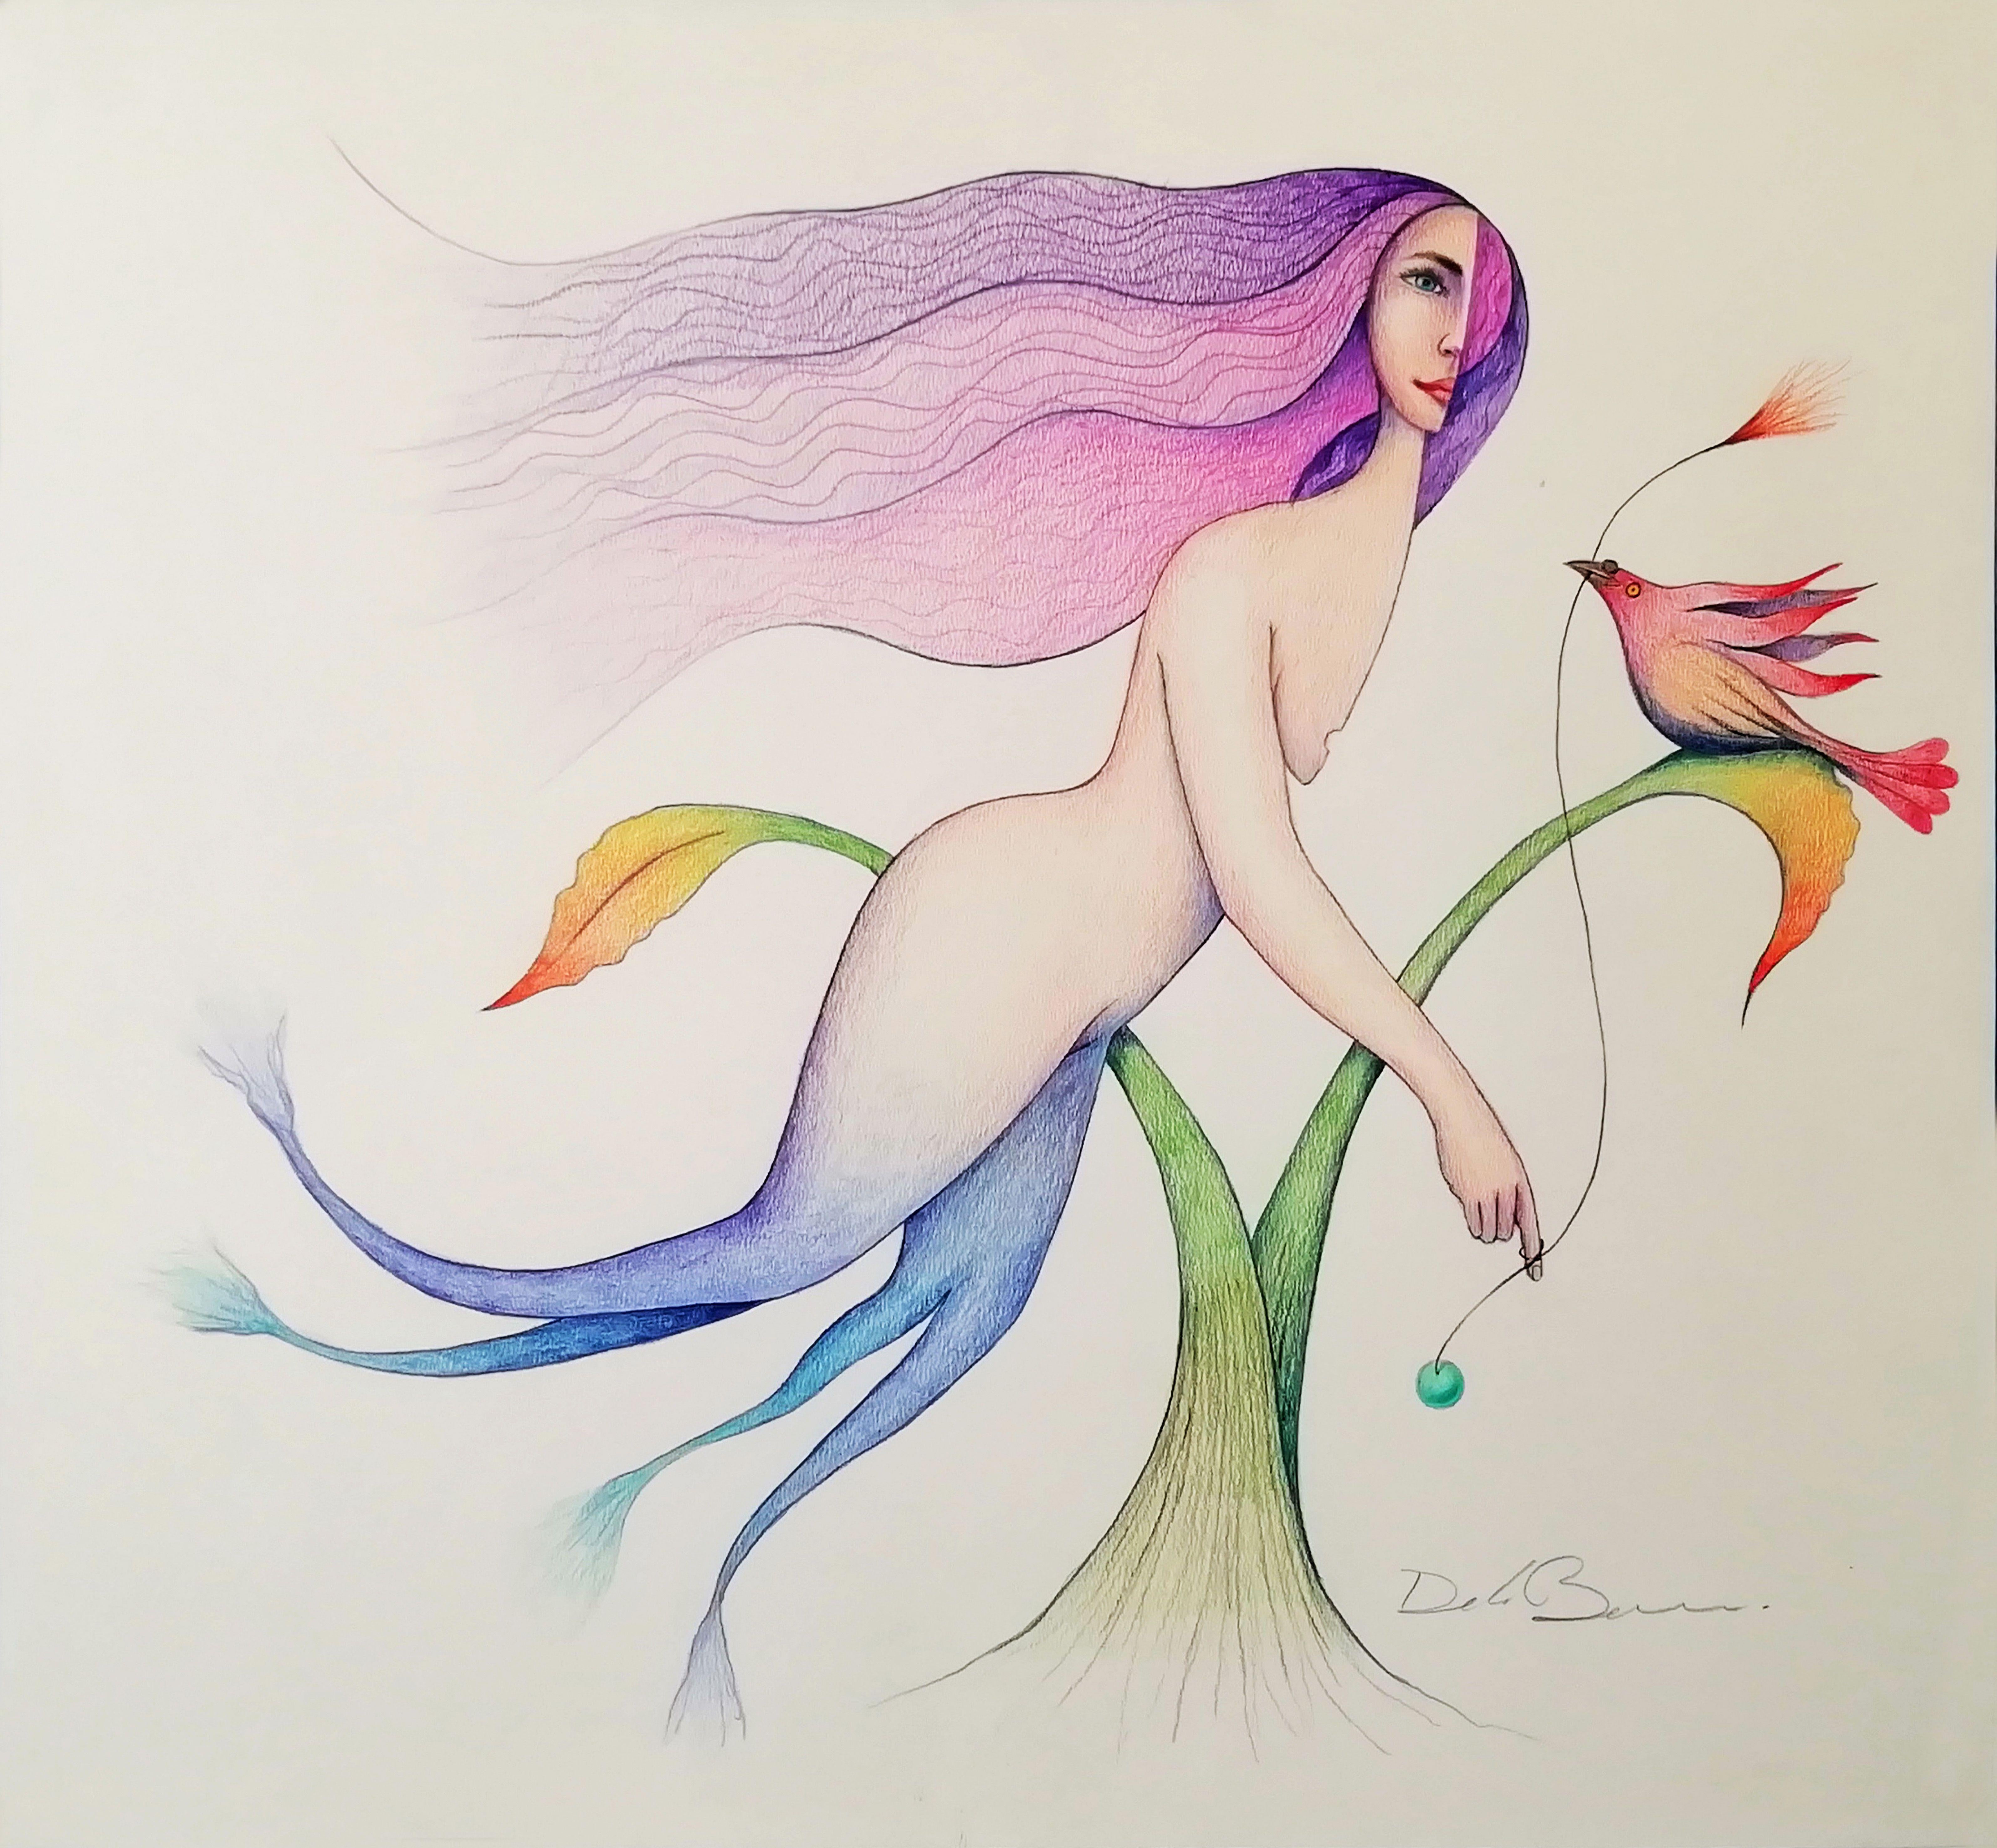 Mermaid, Drawing, Pencil/Colored Pencil on Watercolor Paper - Art by Jose Luis De la Barra Bellido